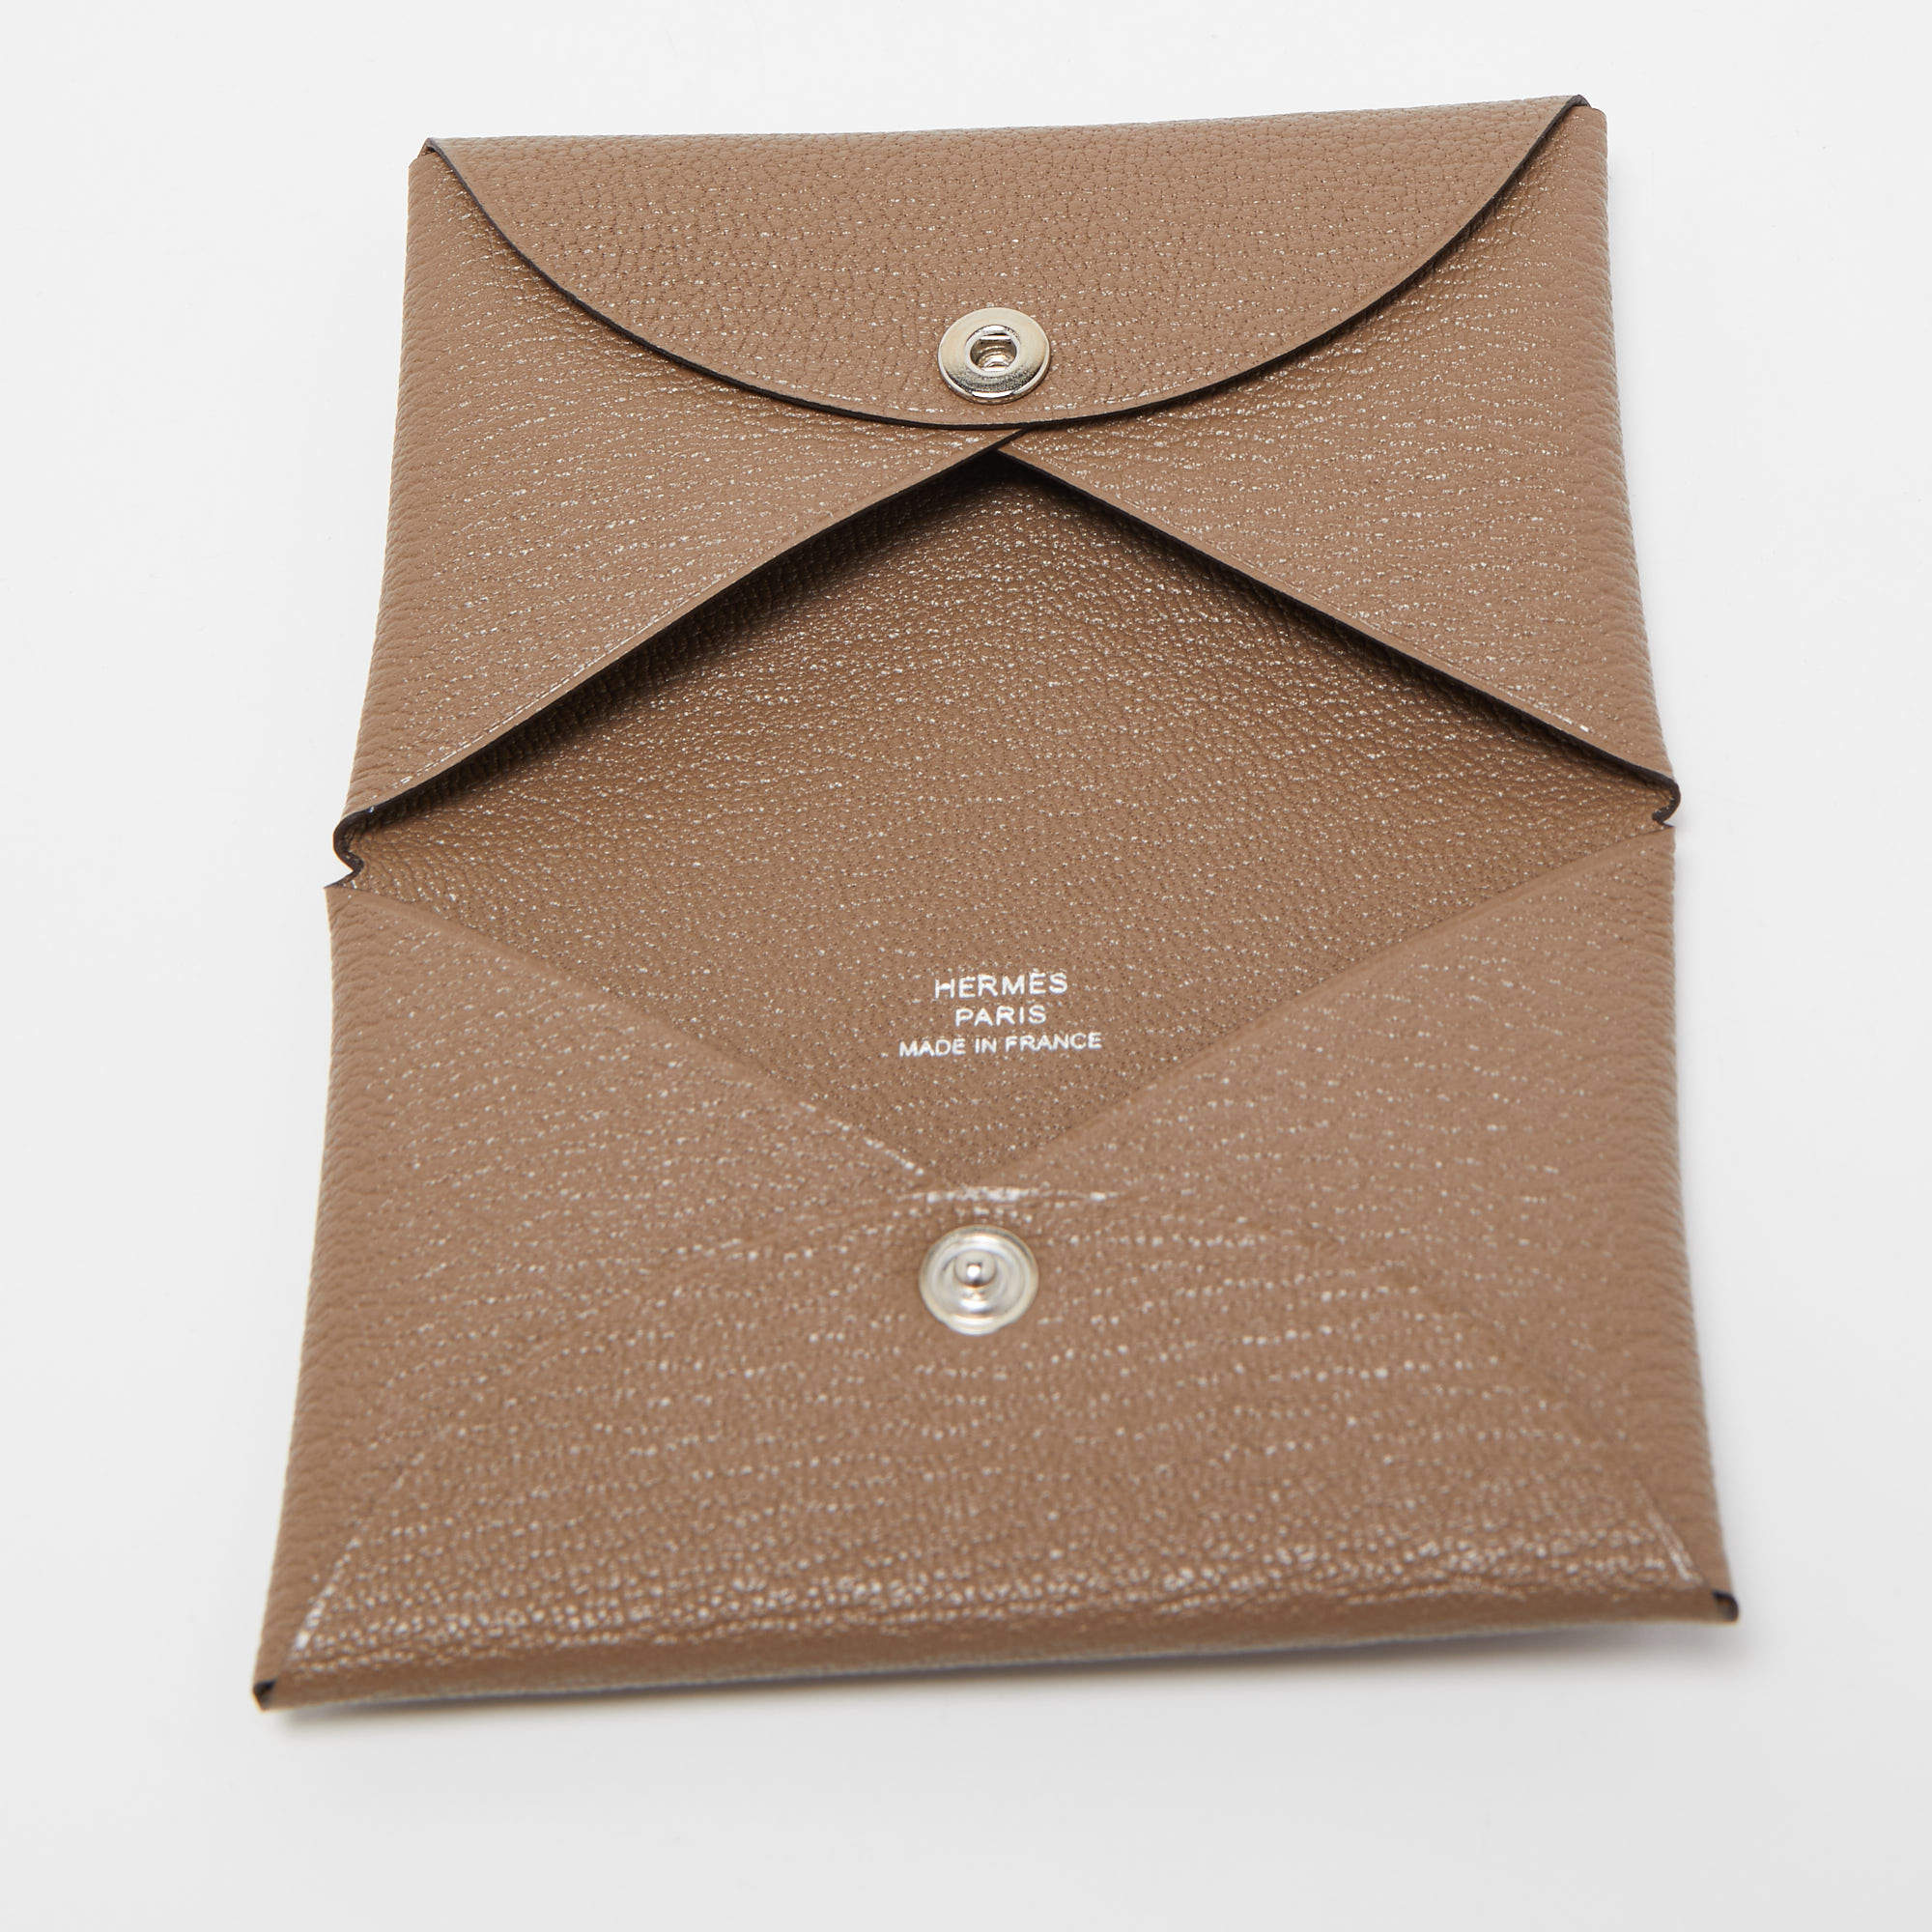 NEW Hermes Calvi Card Holder Leather Case Epsom Gold Brown *Classic*